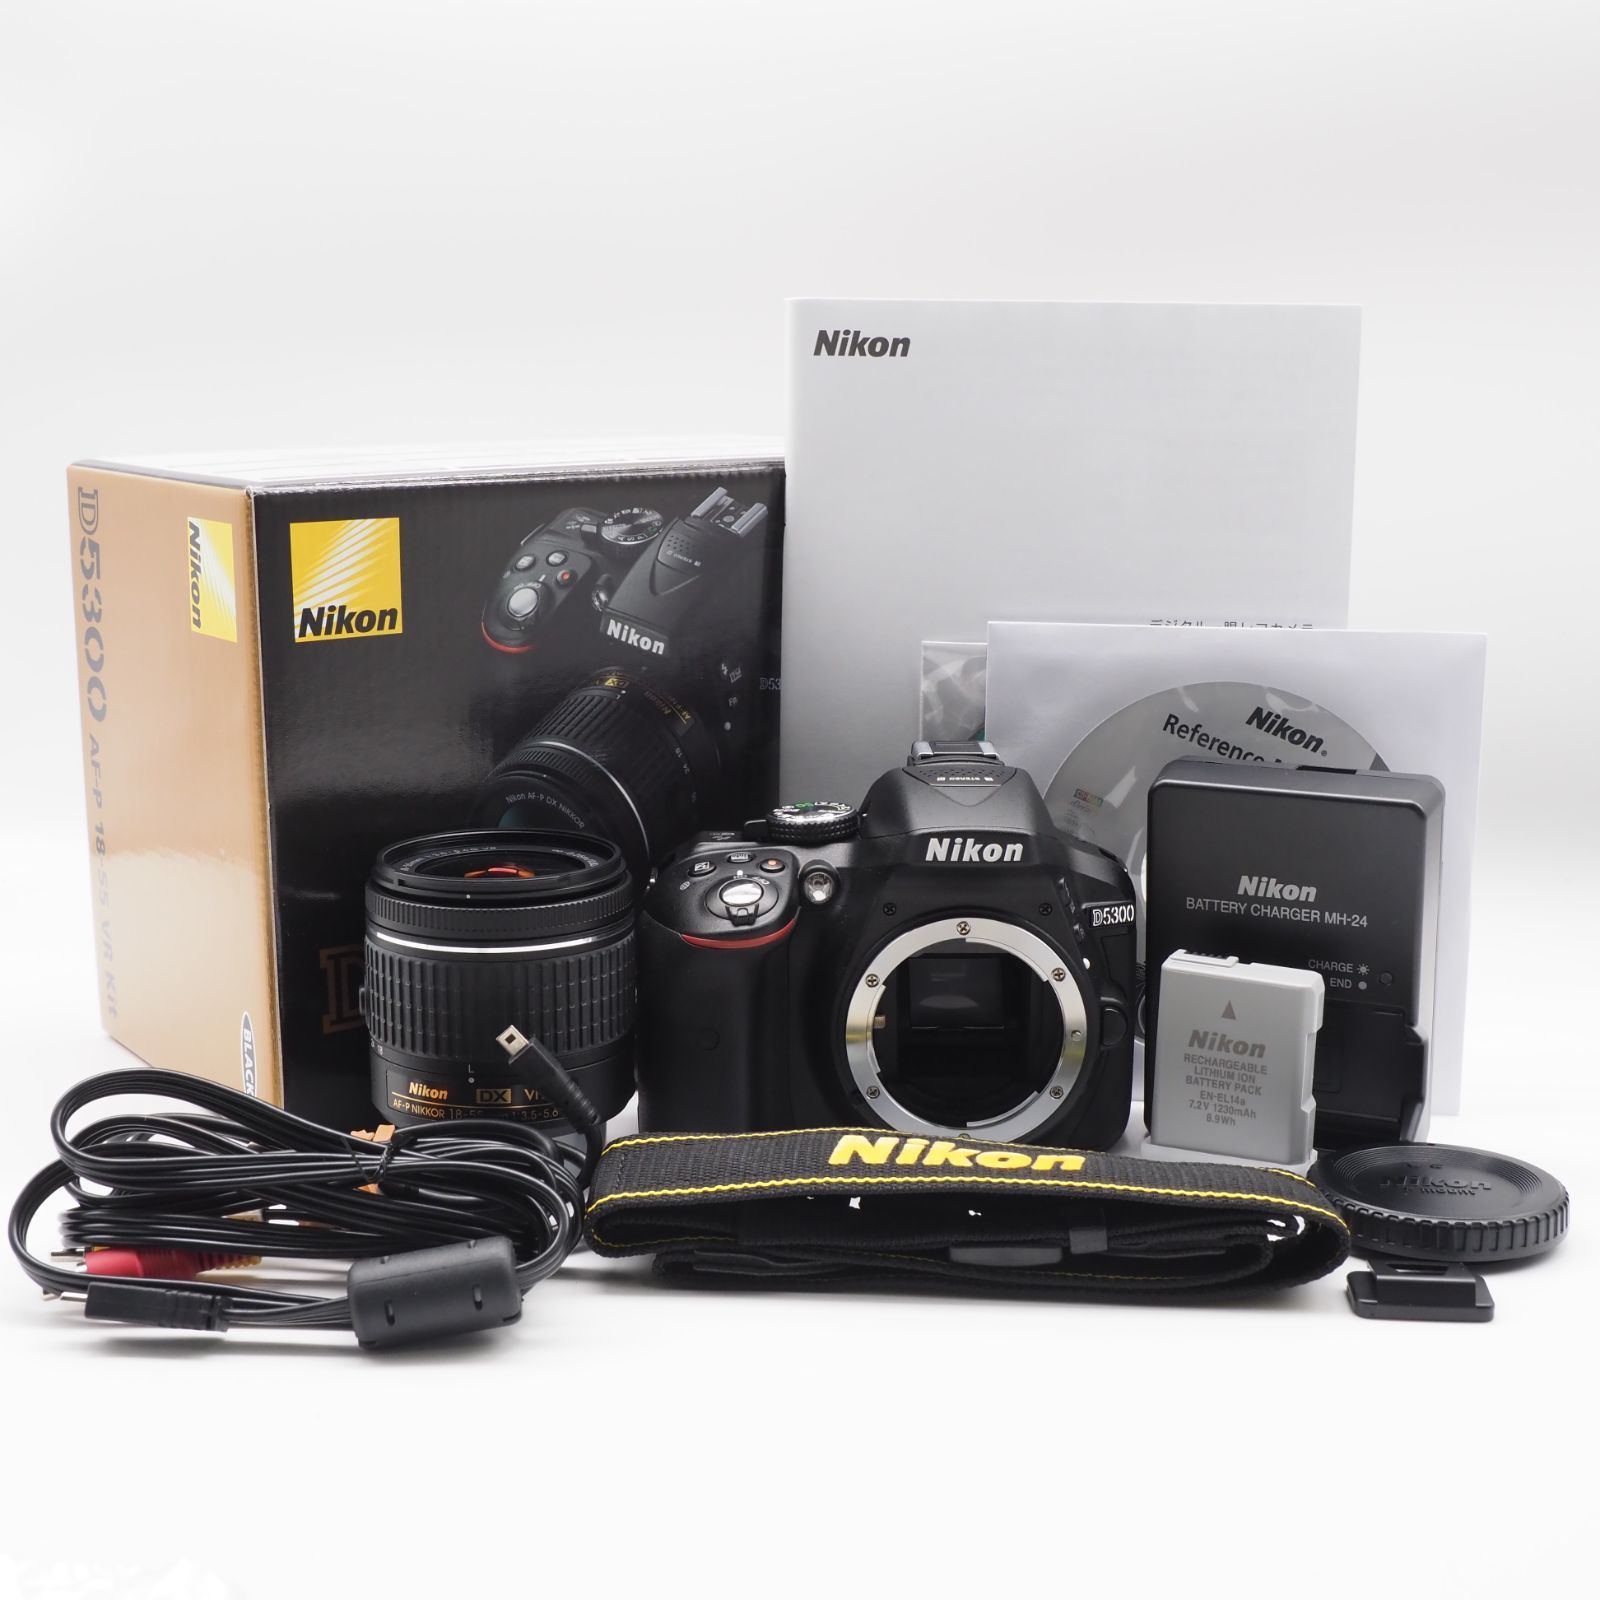 Nikon  D5300 AF-P 18-55 VR レンズキット